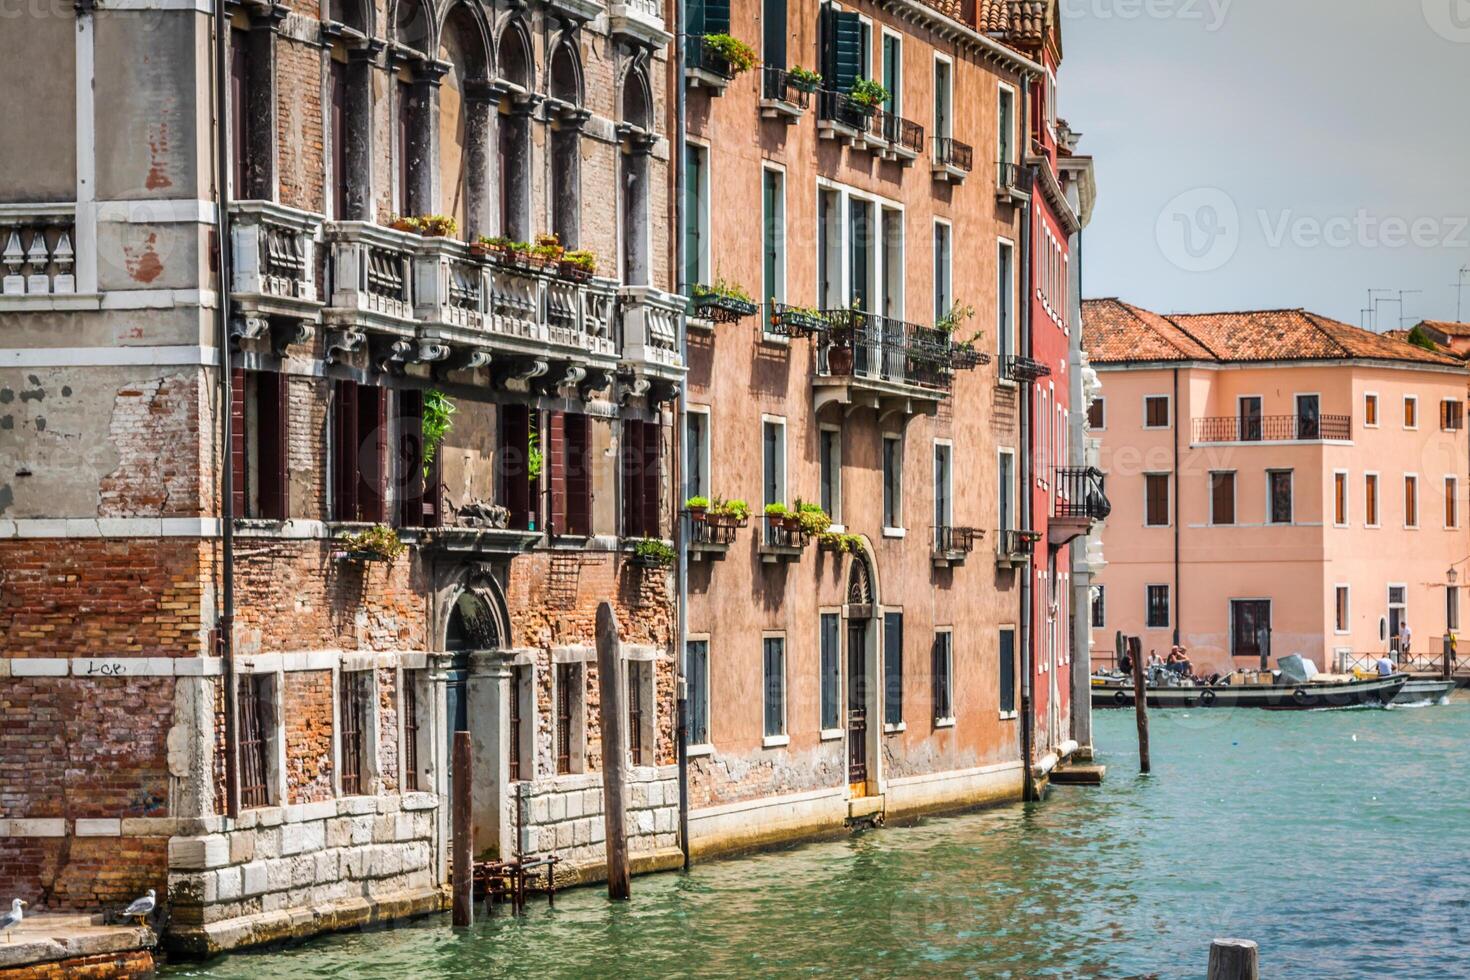 de huis Aan de kust van de kanaal - Venetië, Italië foto